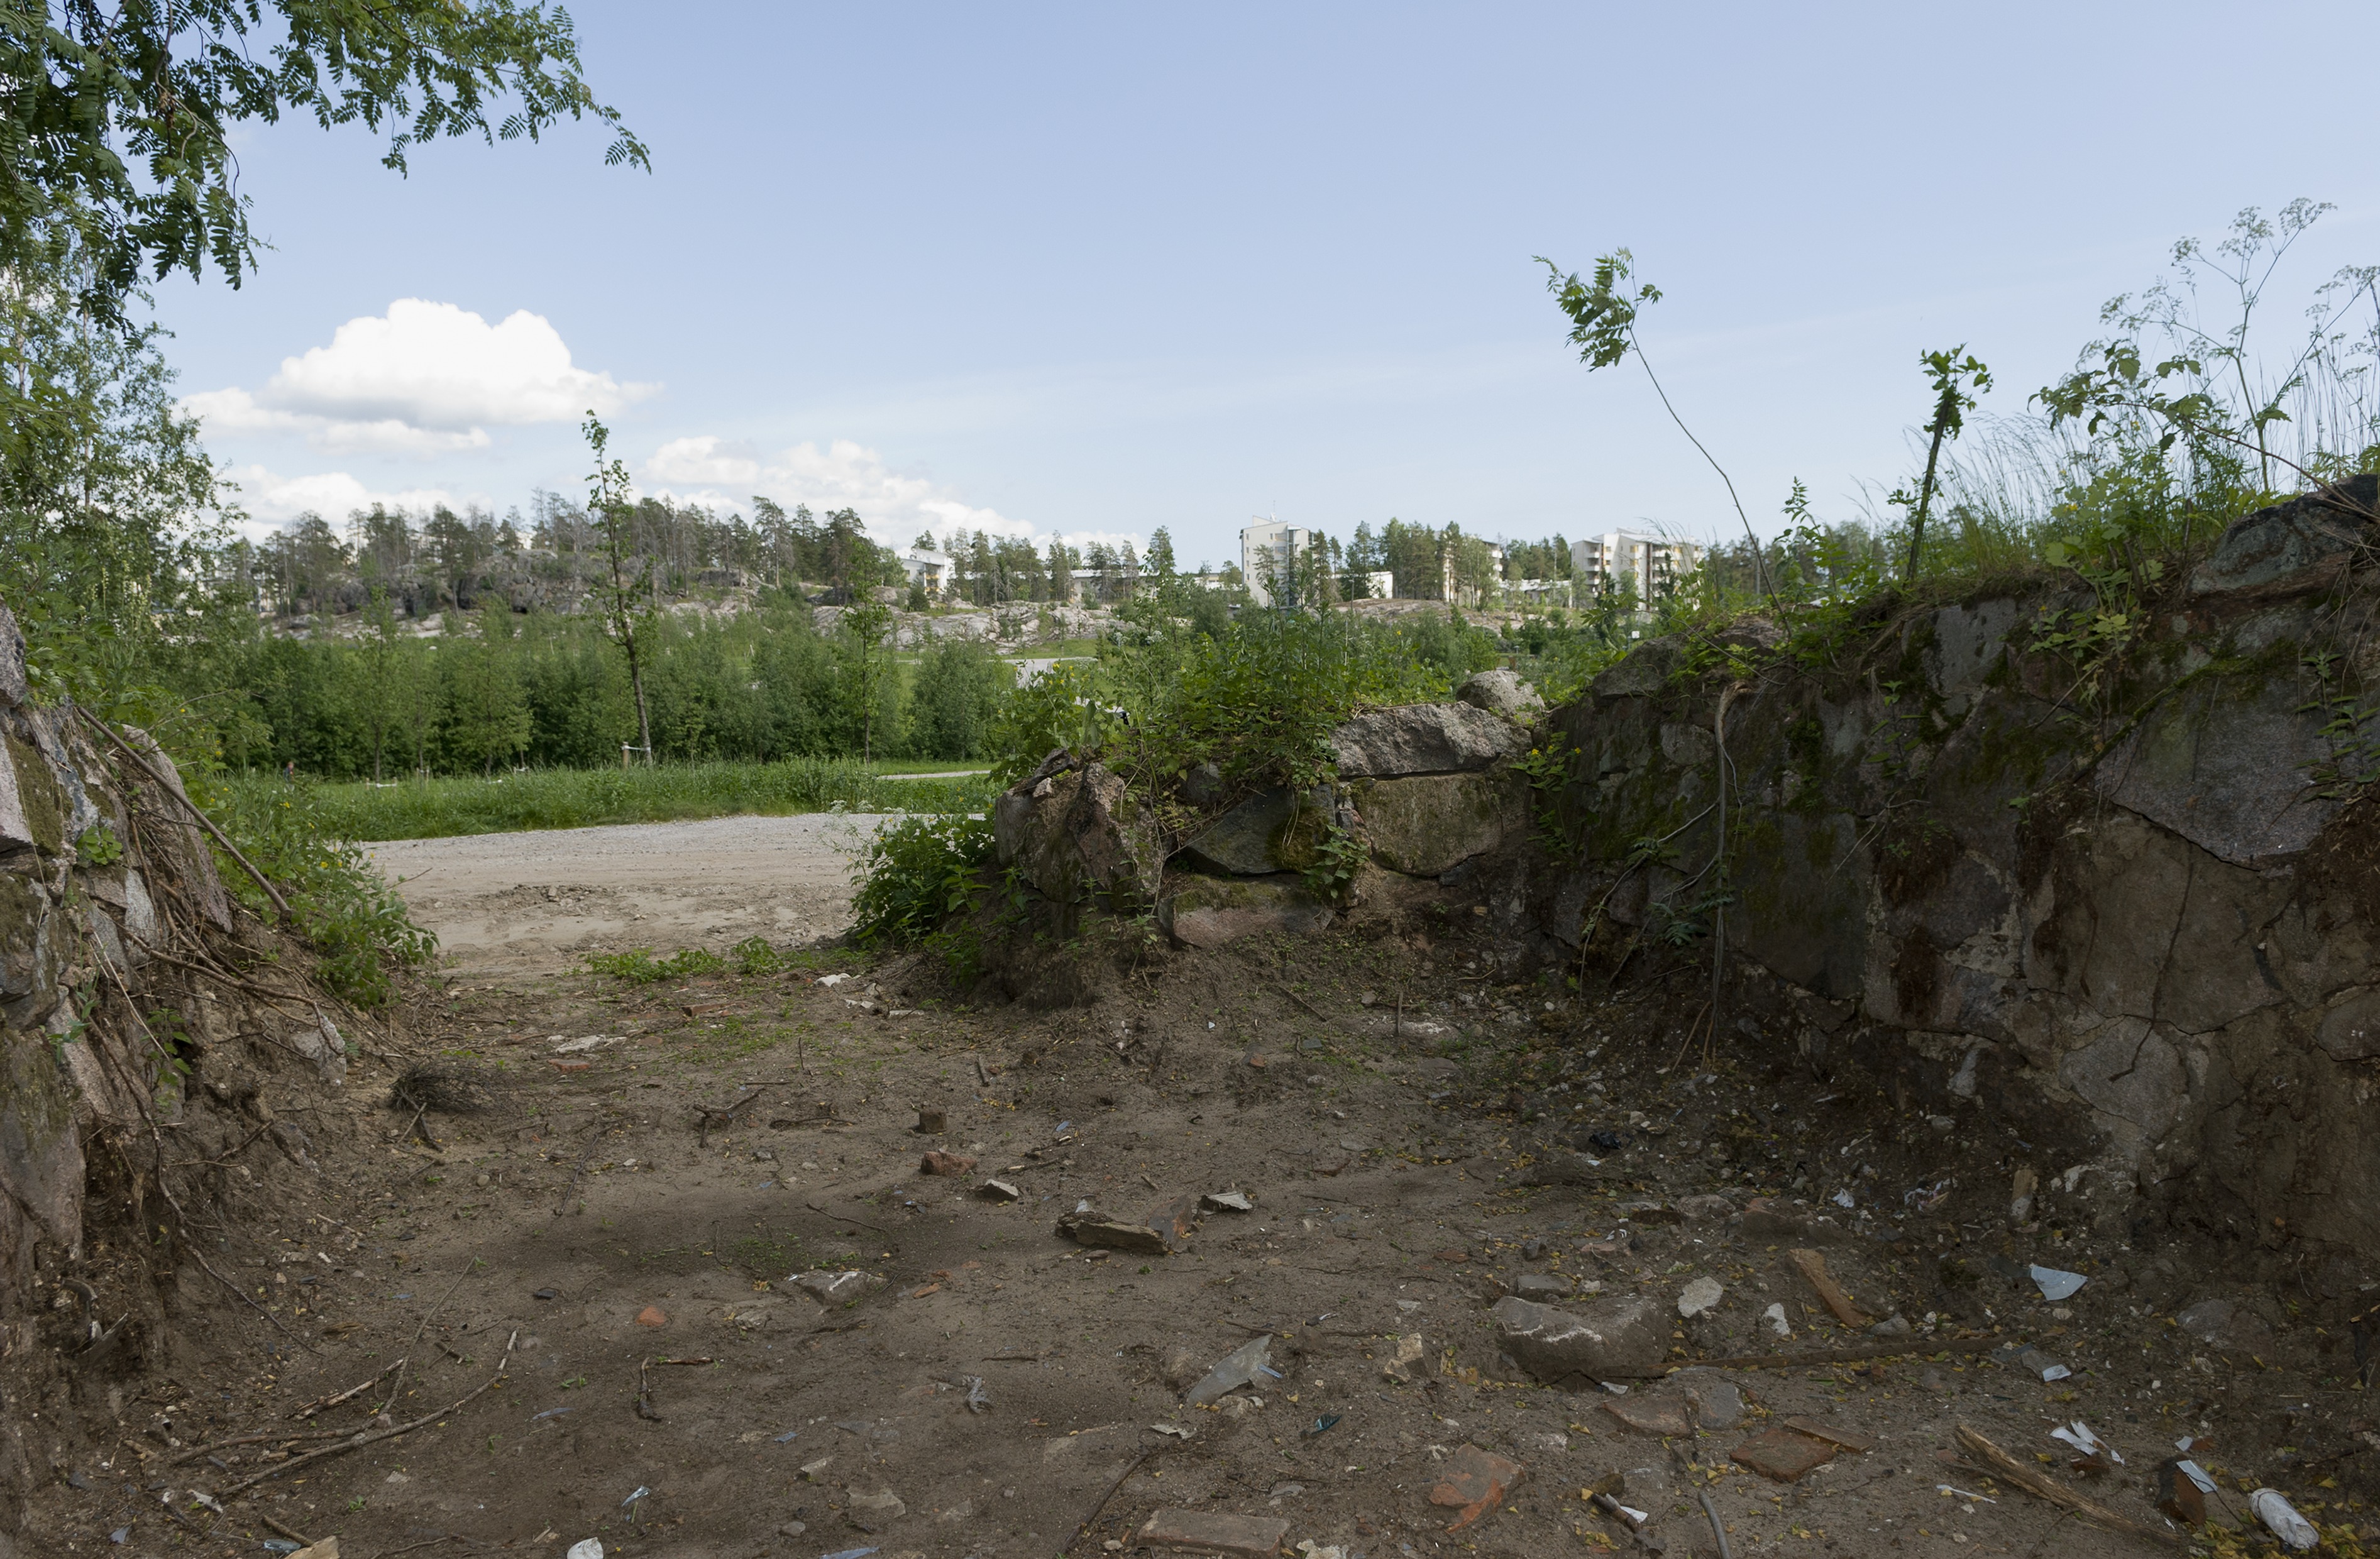 Paukkulanpuistossa sijaitsevat rakenteet, kauempana näkyy Kivikon asuinaluetta. Puiston alueella on sijainnut puolustusvoimien rakentama Malmin ampumarata, joka valmistui vuonna 1937 Helsingissä järjestettyihin ammunnan MM-kisoihin, ja suljettiin vuonna 1993.